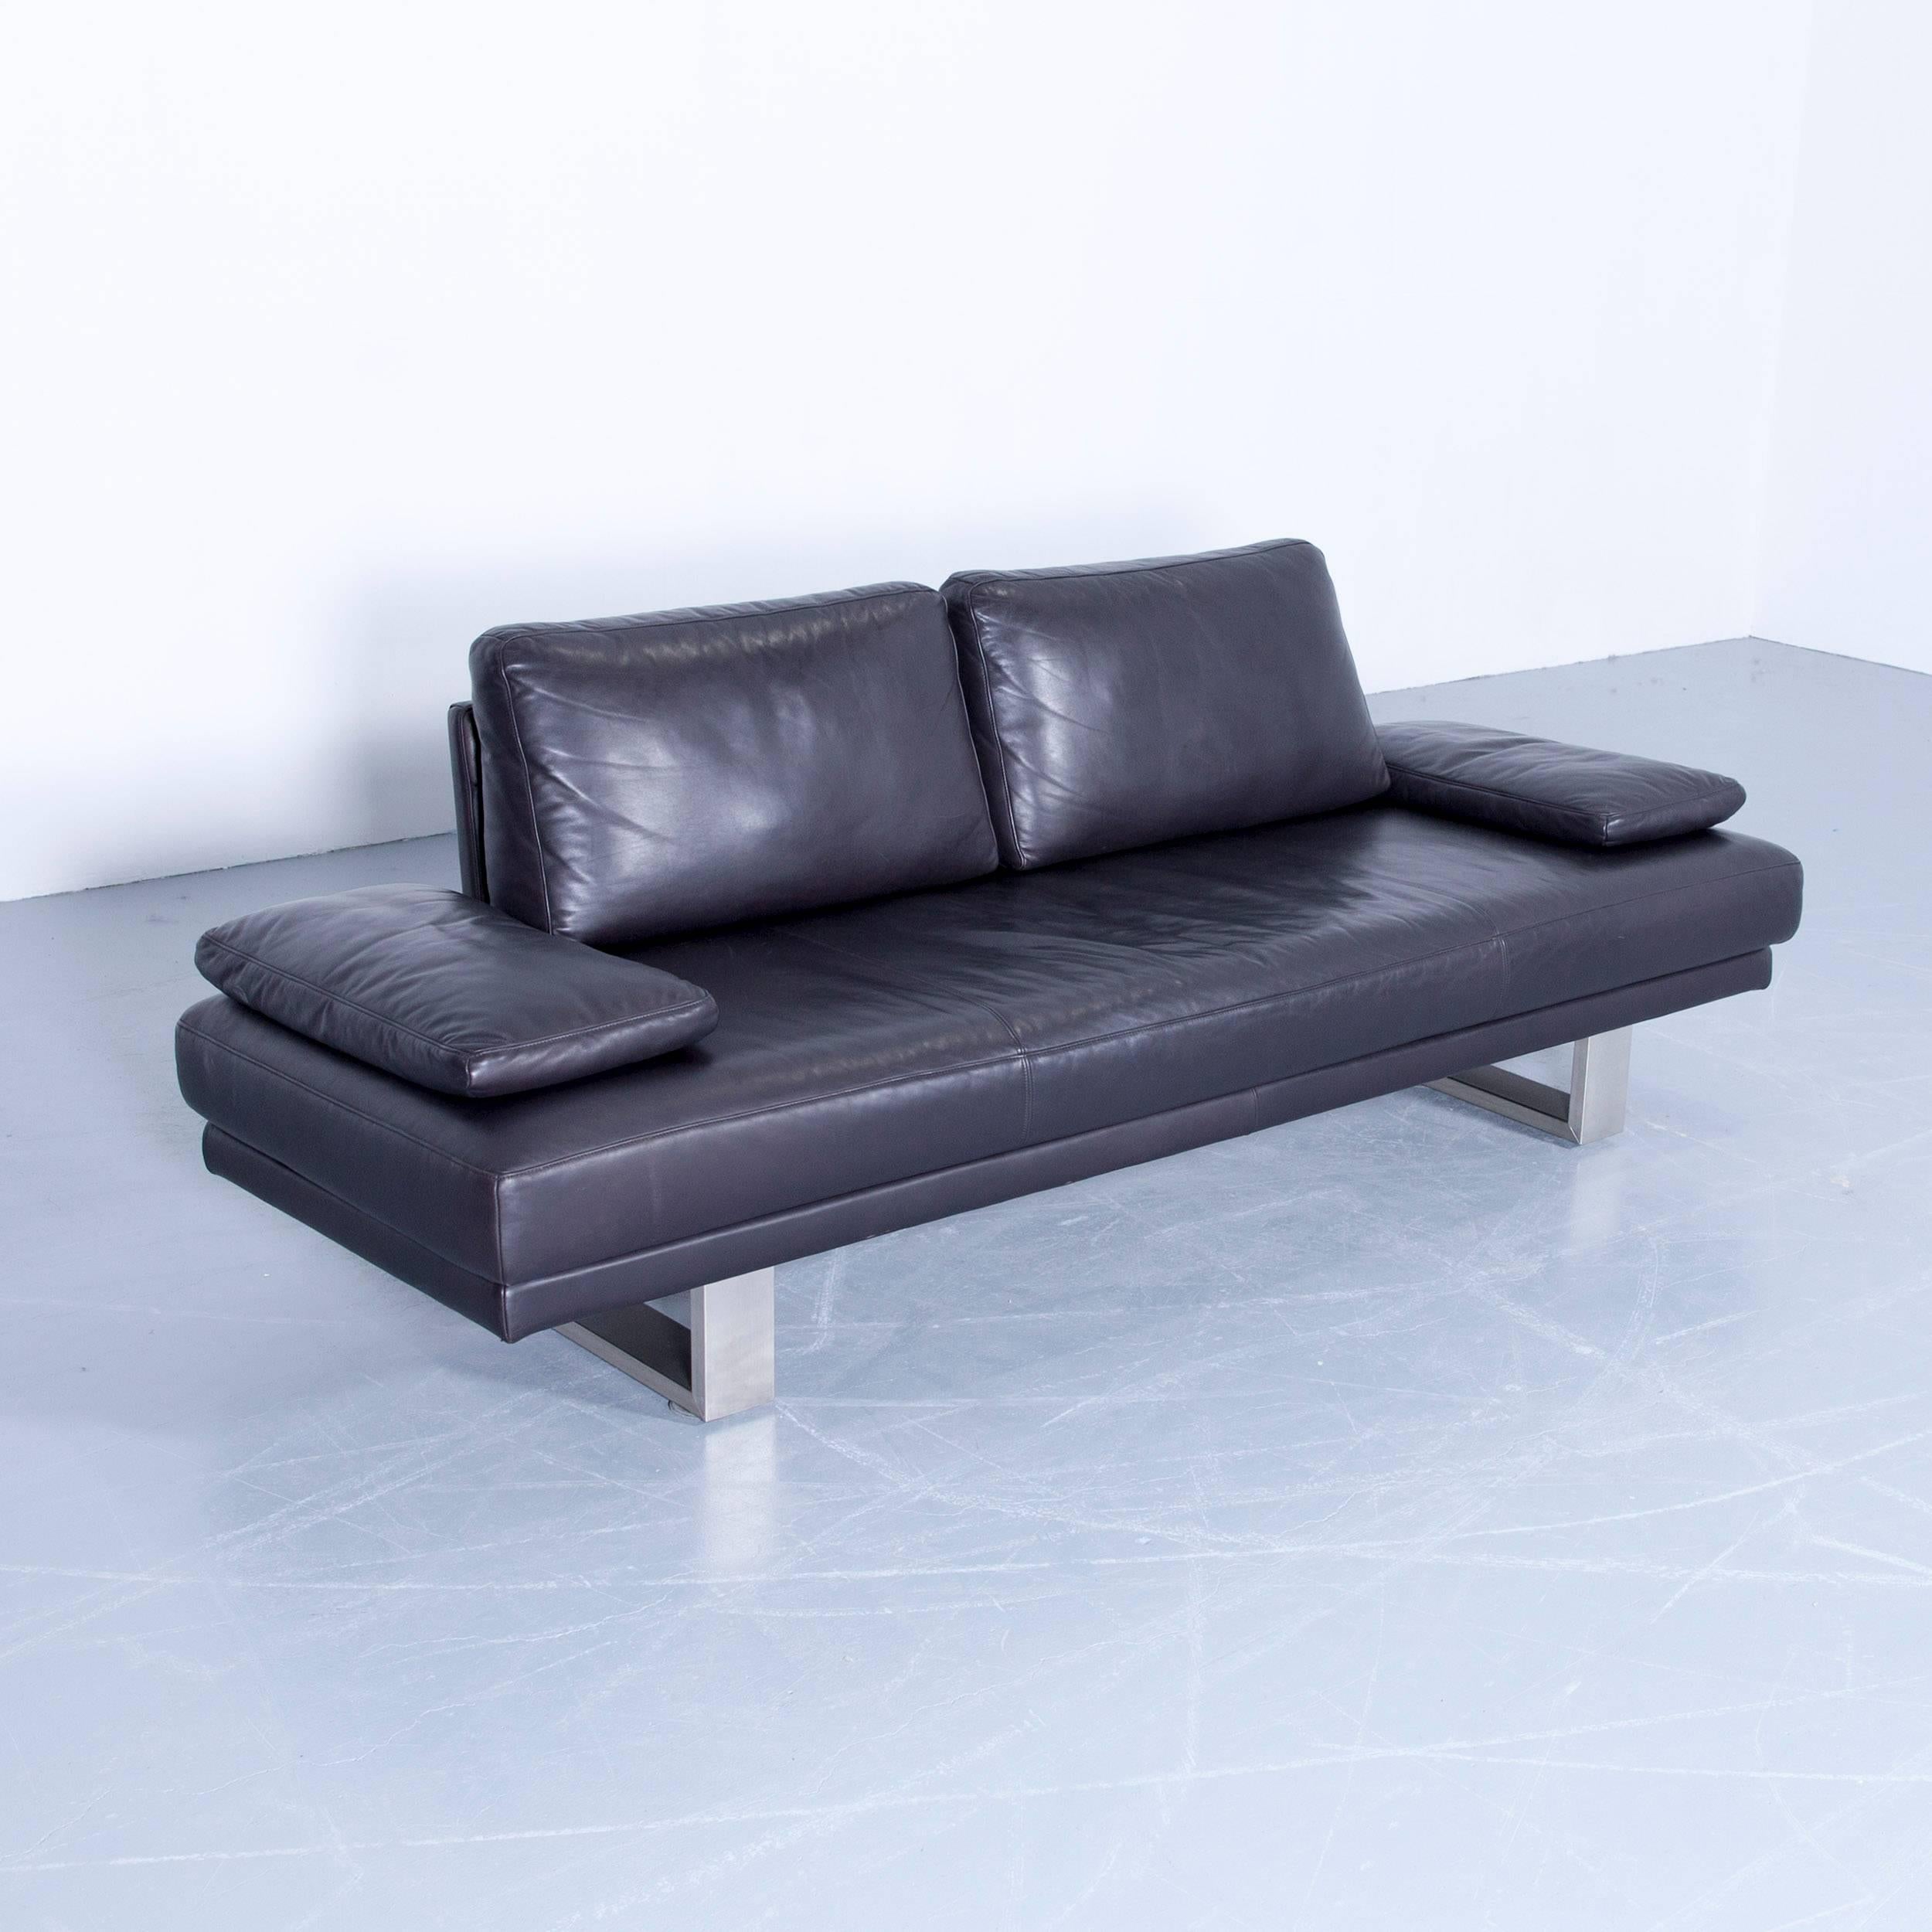 German Rolf Benz 6600 Sofa Designer Leather Aubergine Black Three-Seat Couch Modern